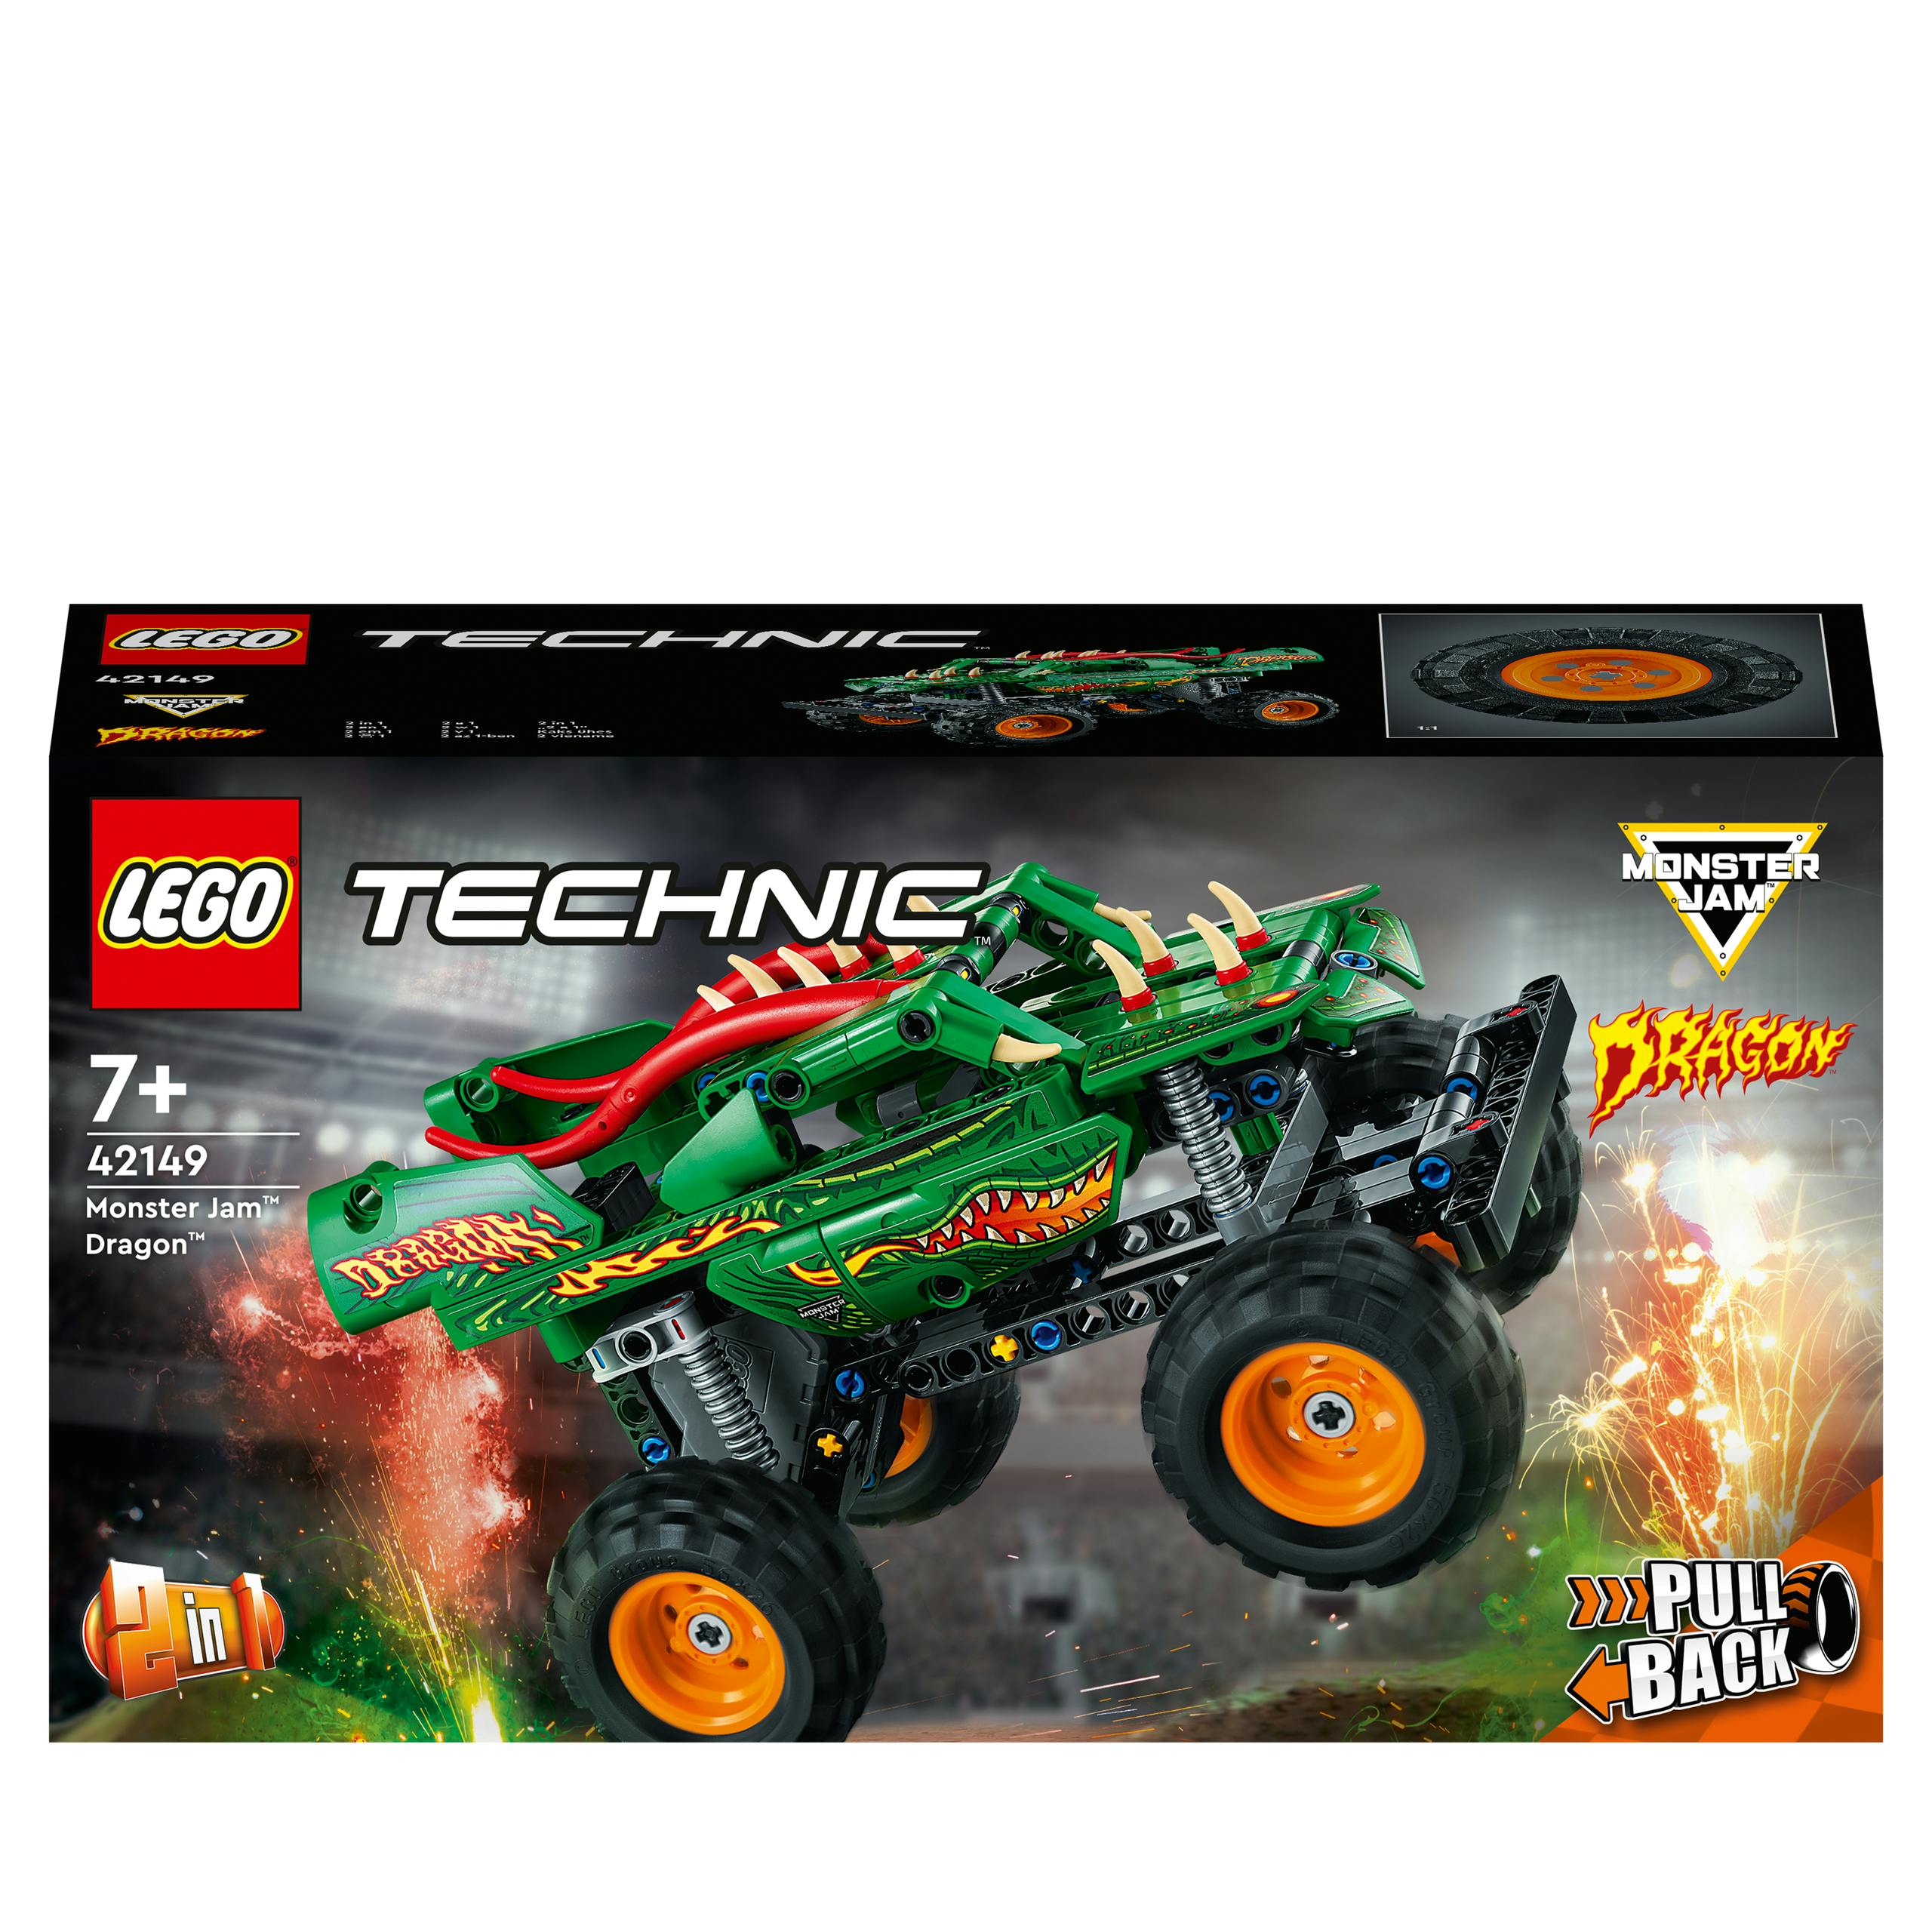 LEGO Technic Monster Jam Dragon in Monster Truck (42149)